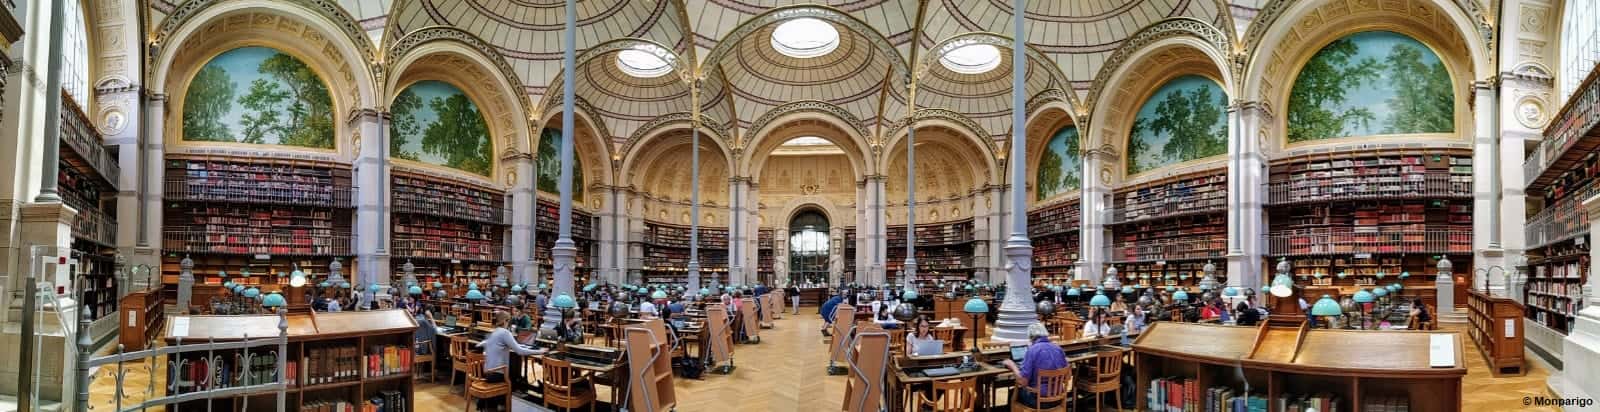 Panorámica de la sala Larouste Biblioteca Nacional de Francia en París